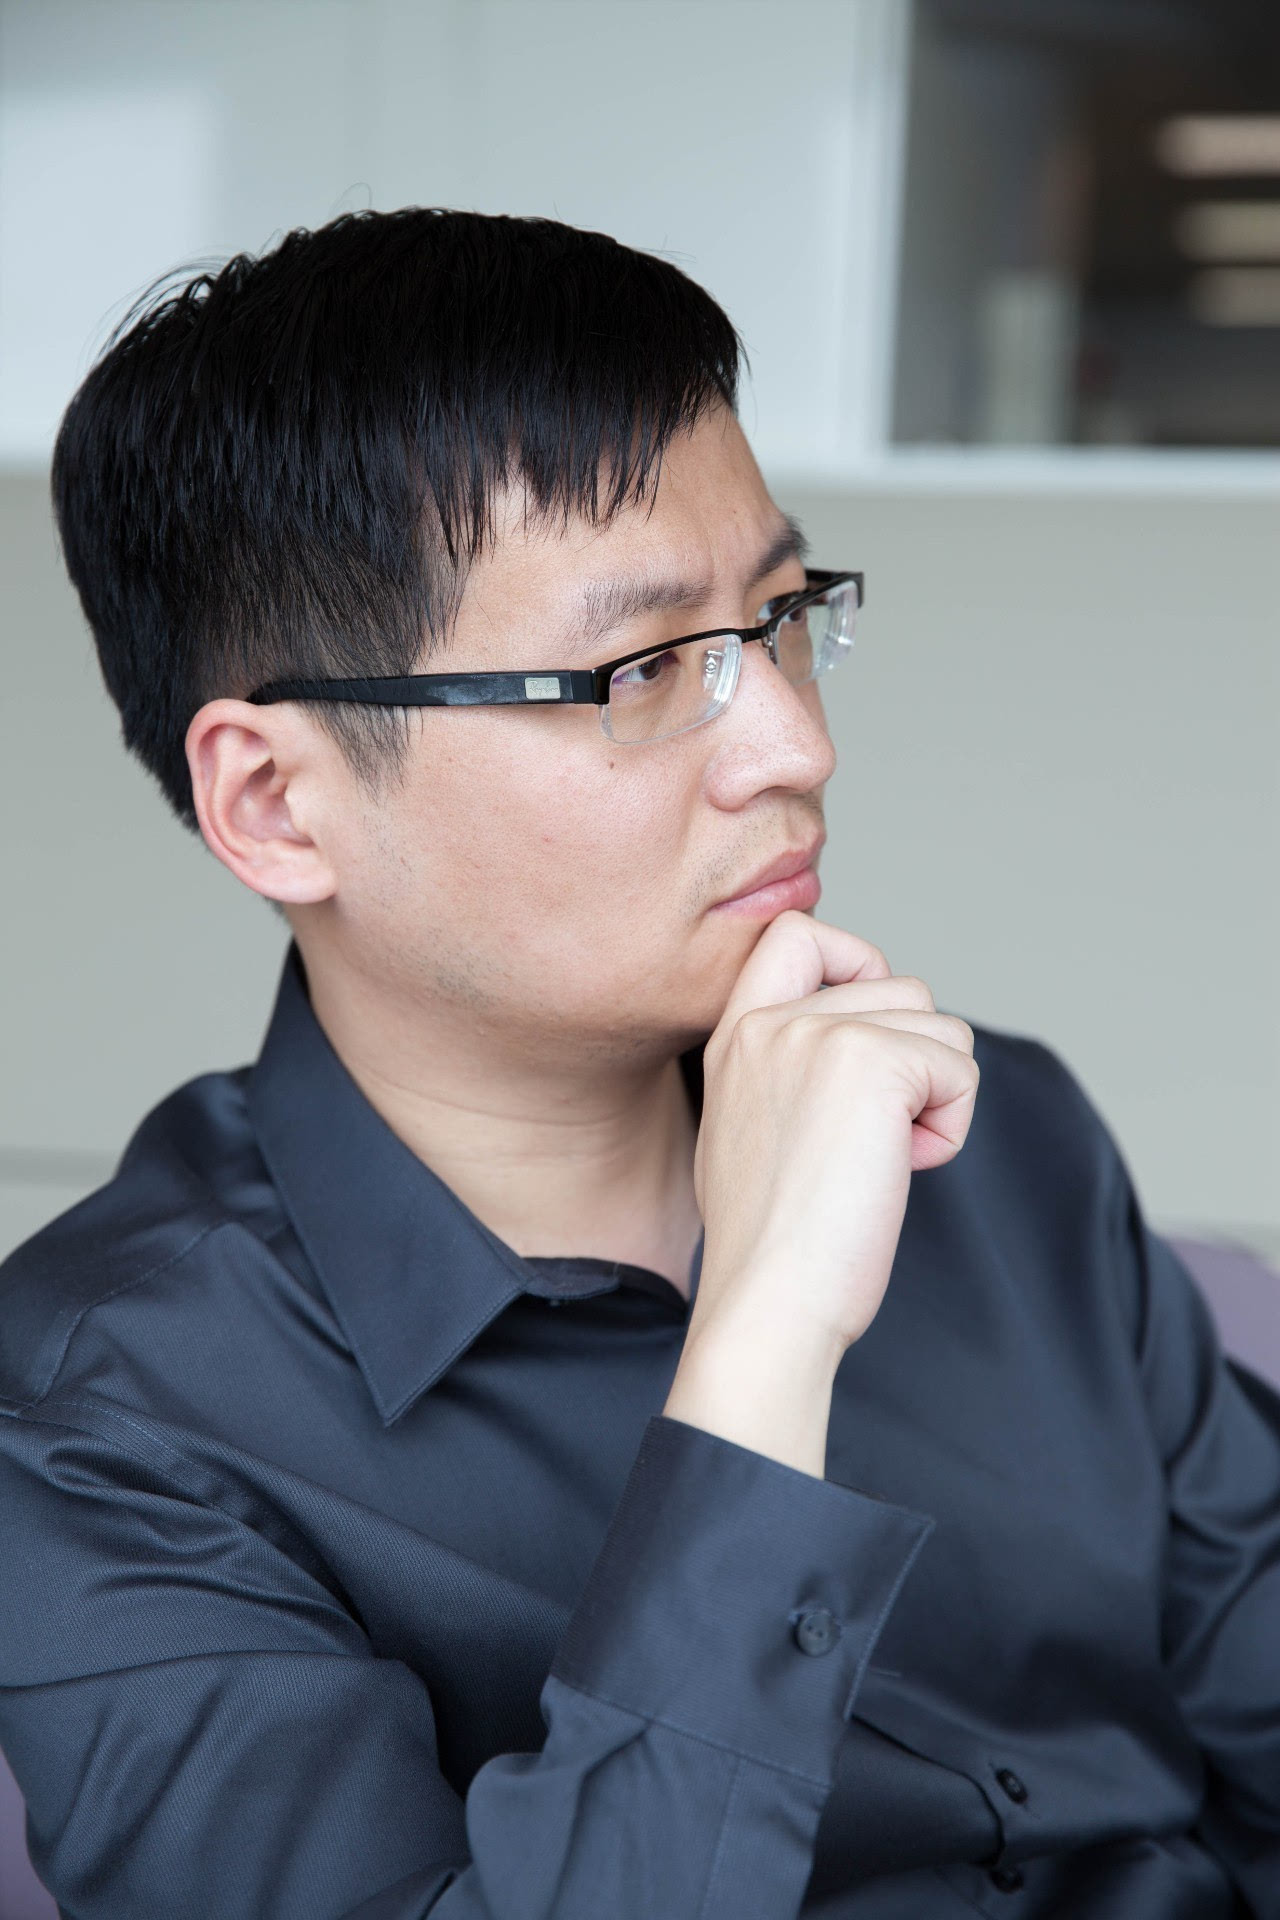 微软(中国)高级产品市场经理阮思奇